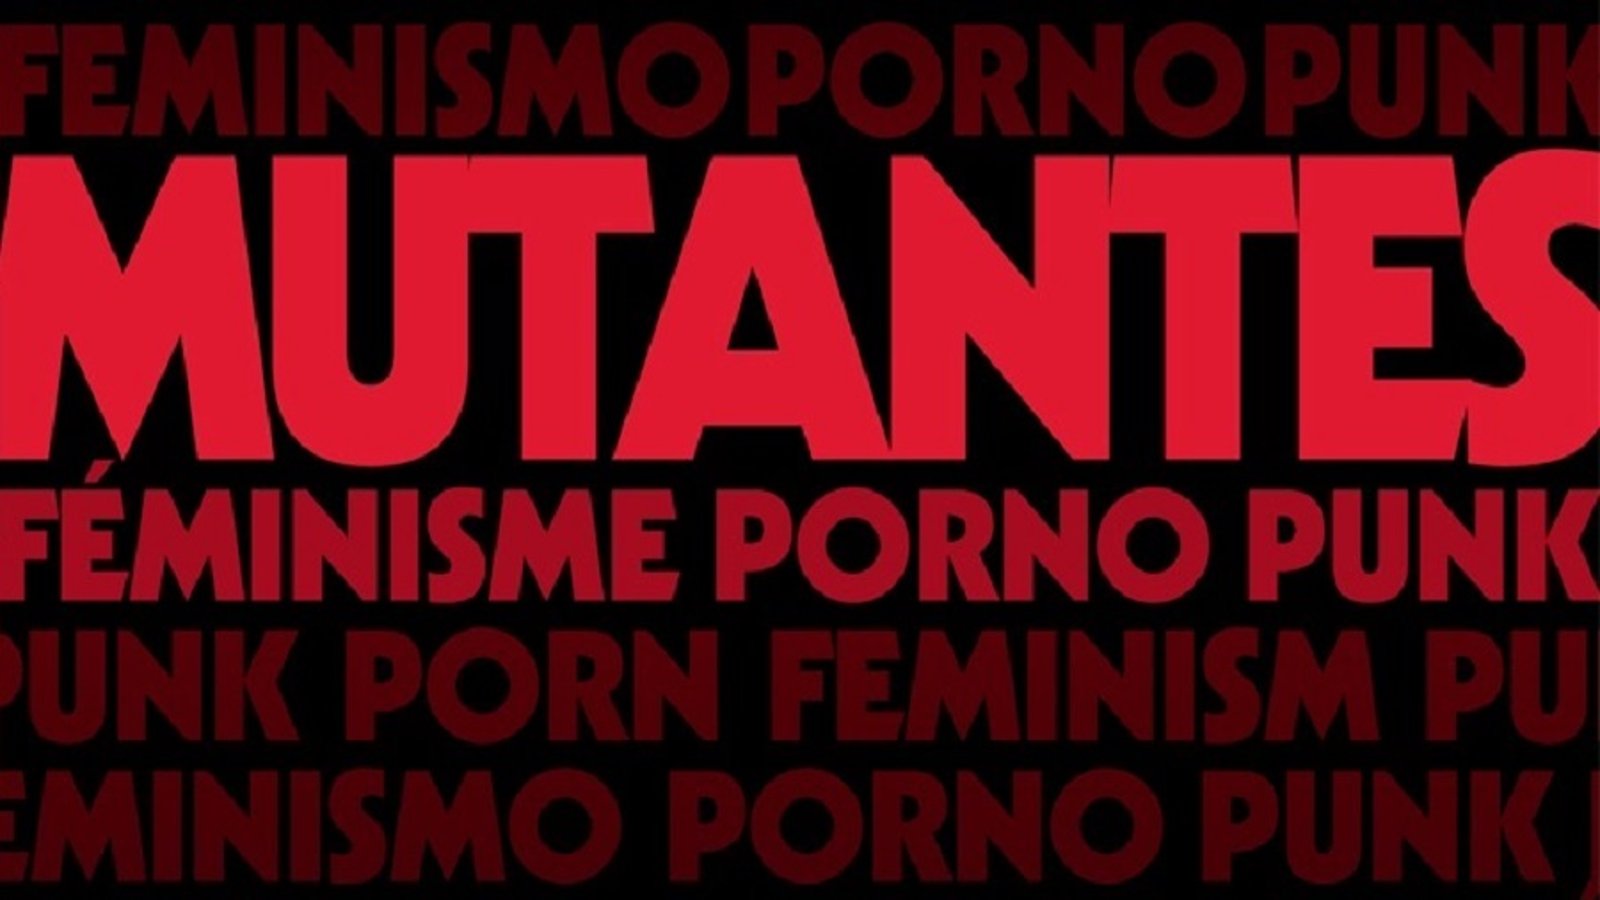 Mutantes - Punk Porn Feminism